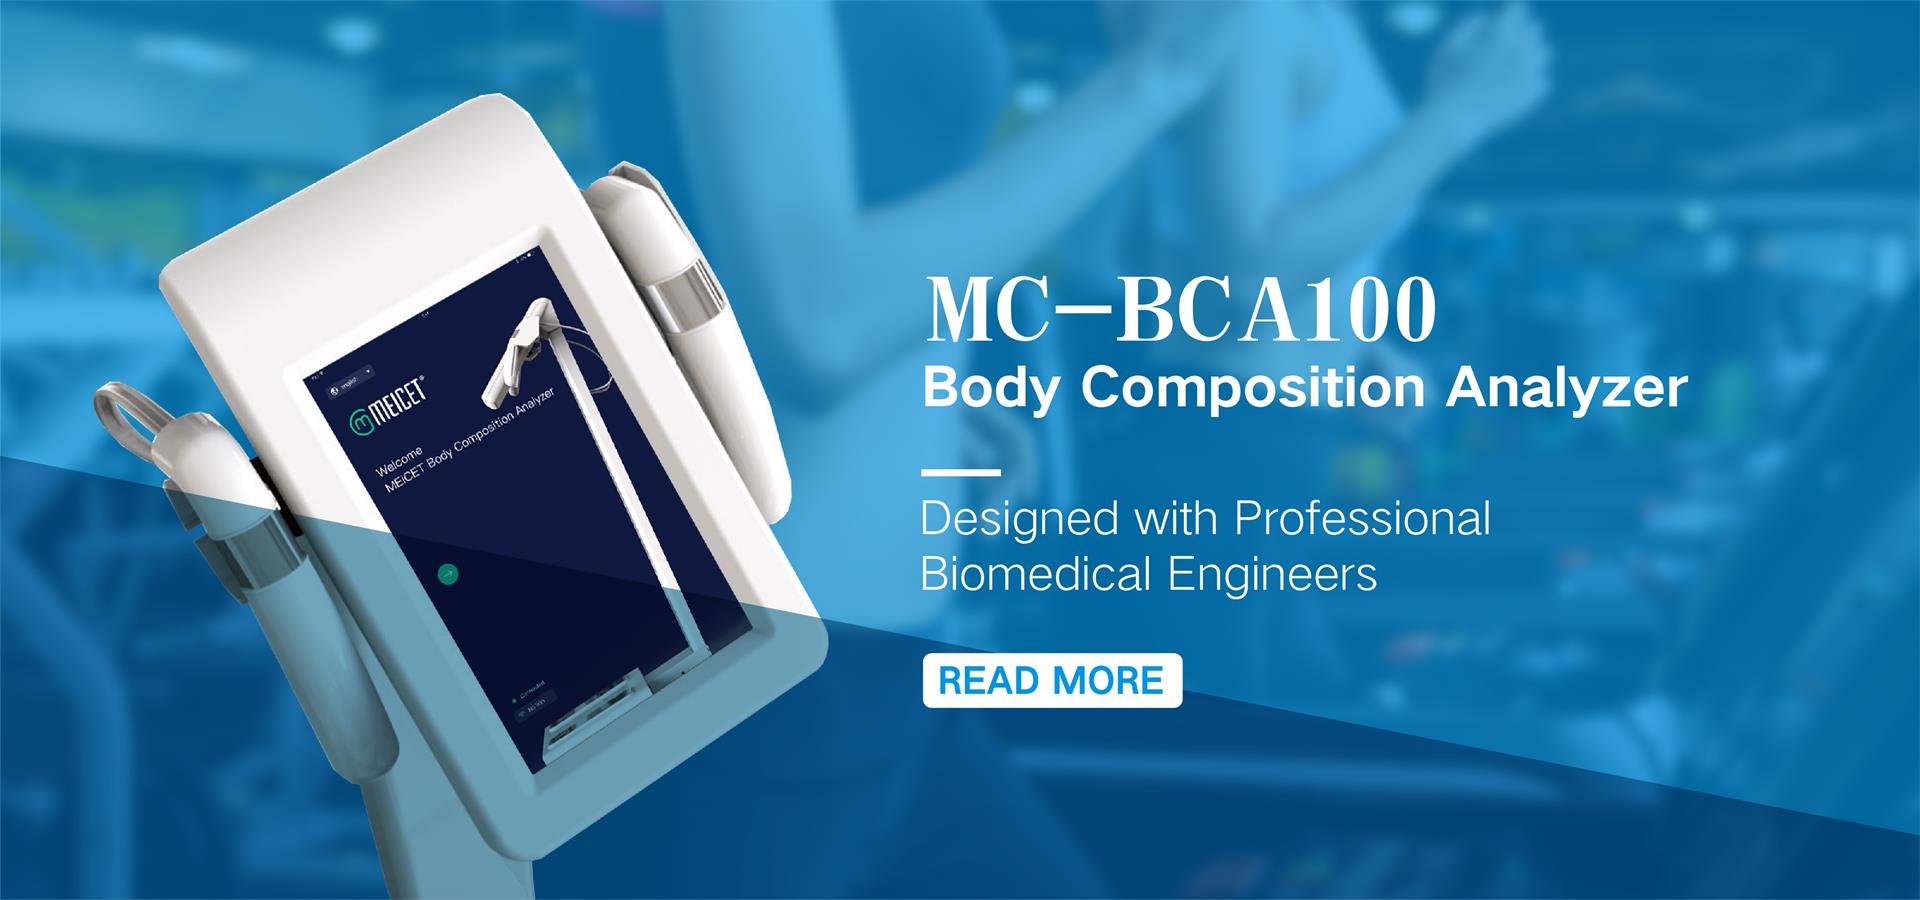 Body Composition Analyzer Machine